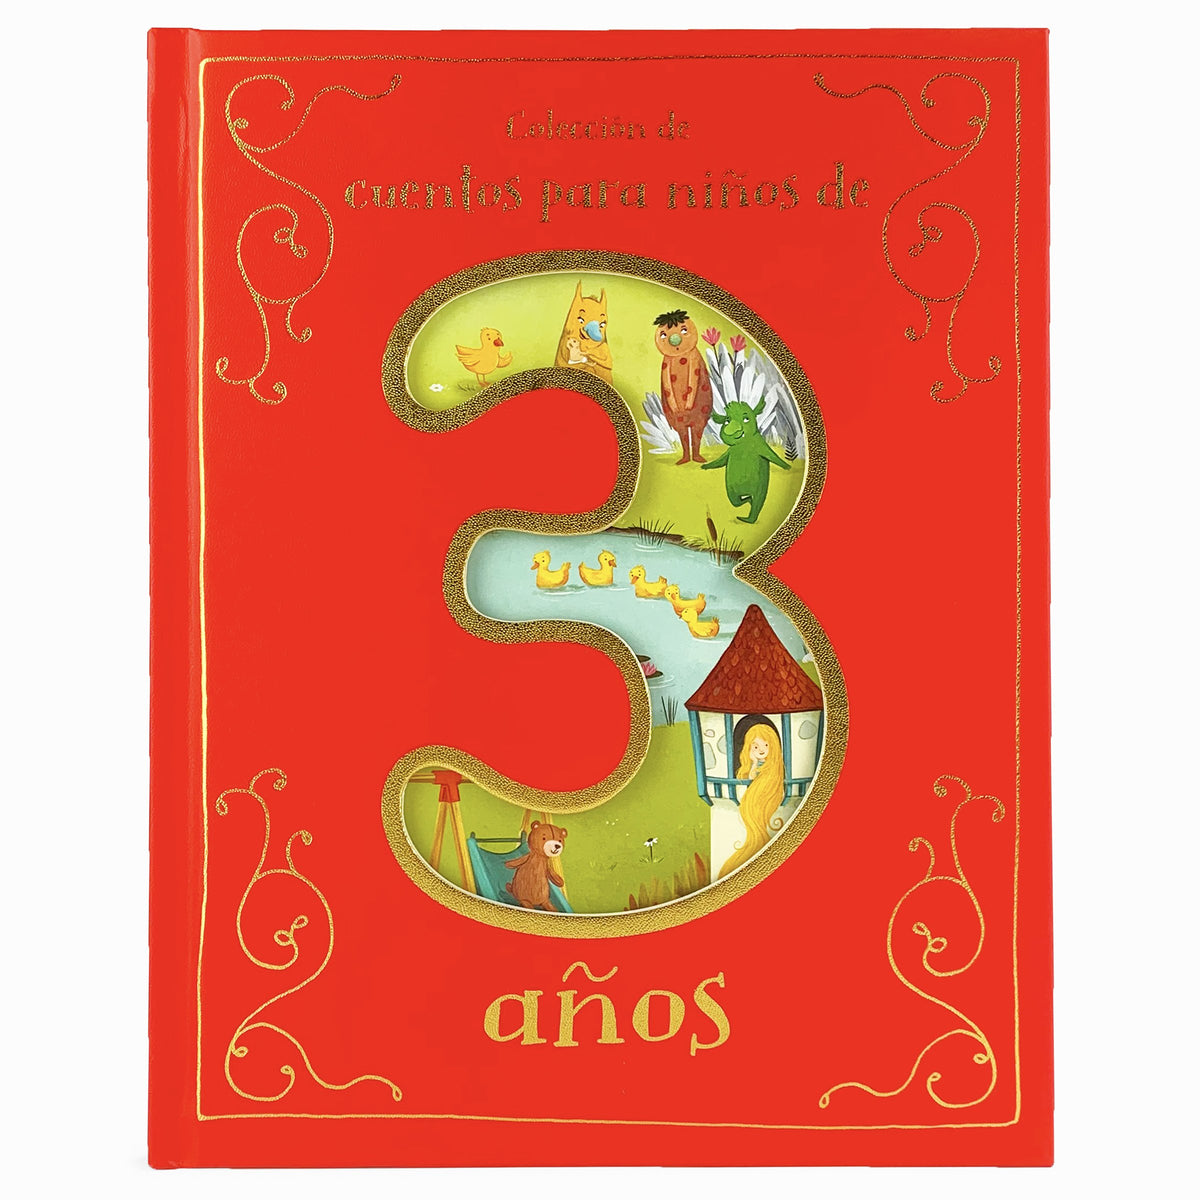 Besitos y Abrazos Para el Bebé: Cuentos Infantiles en Español Para Niños de  2 a 4 Años. Spanish Books for Kids 2-4. Hugs and Kisses (Spanish language  (Paperback)